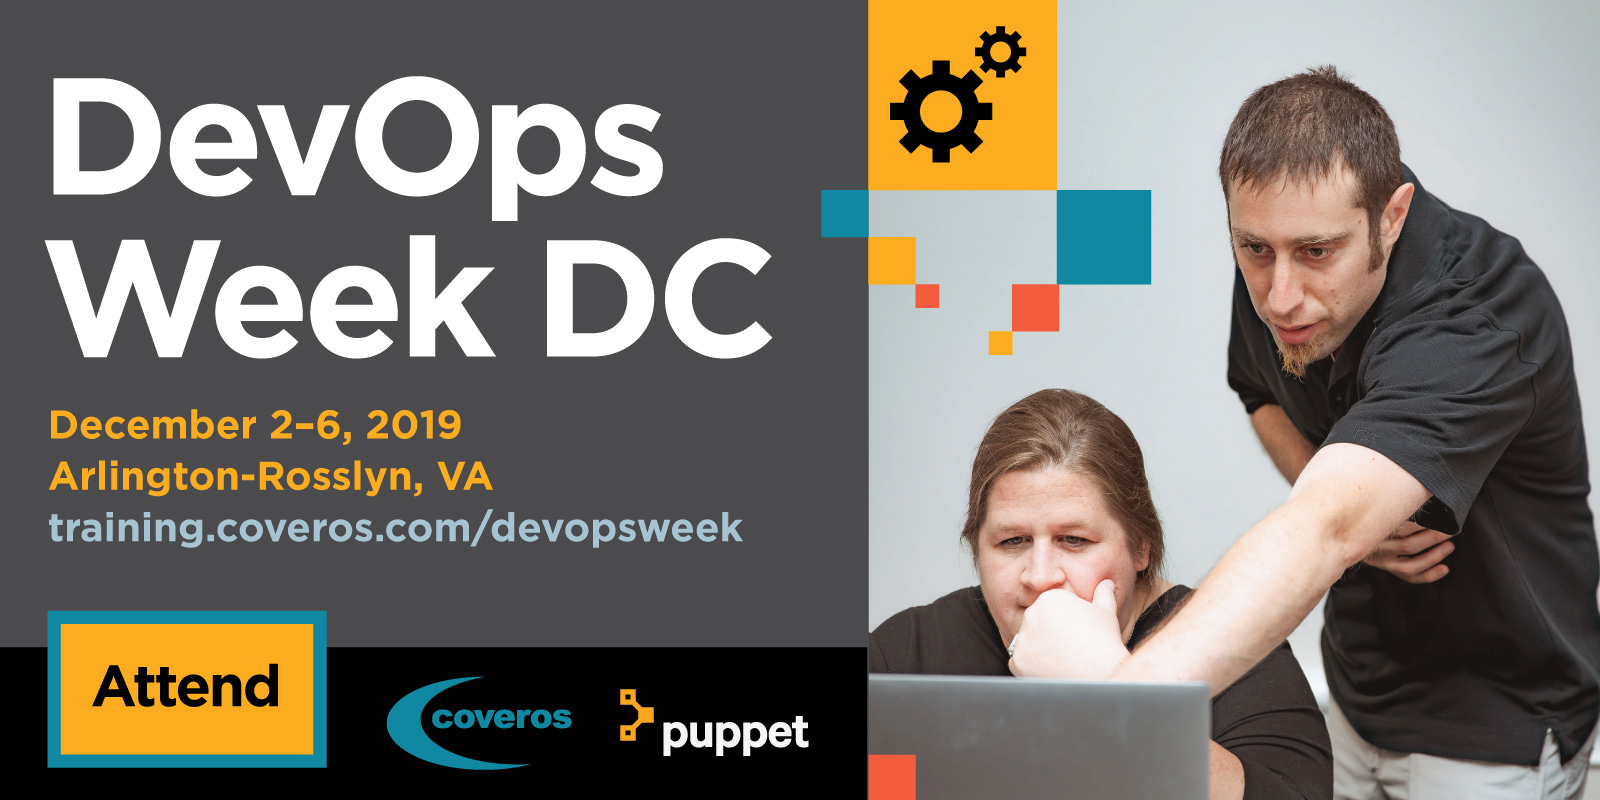 DevOps Week DC